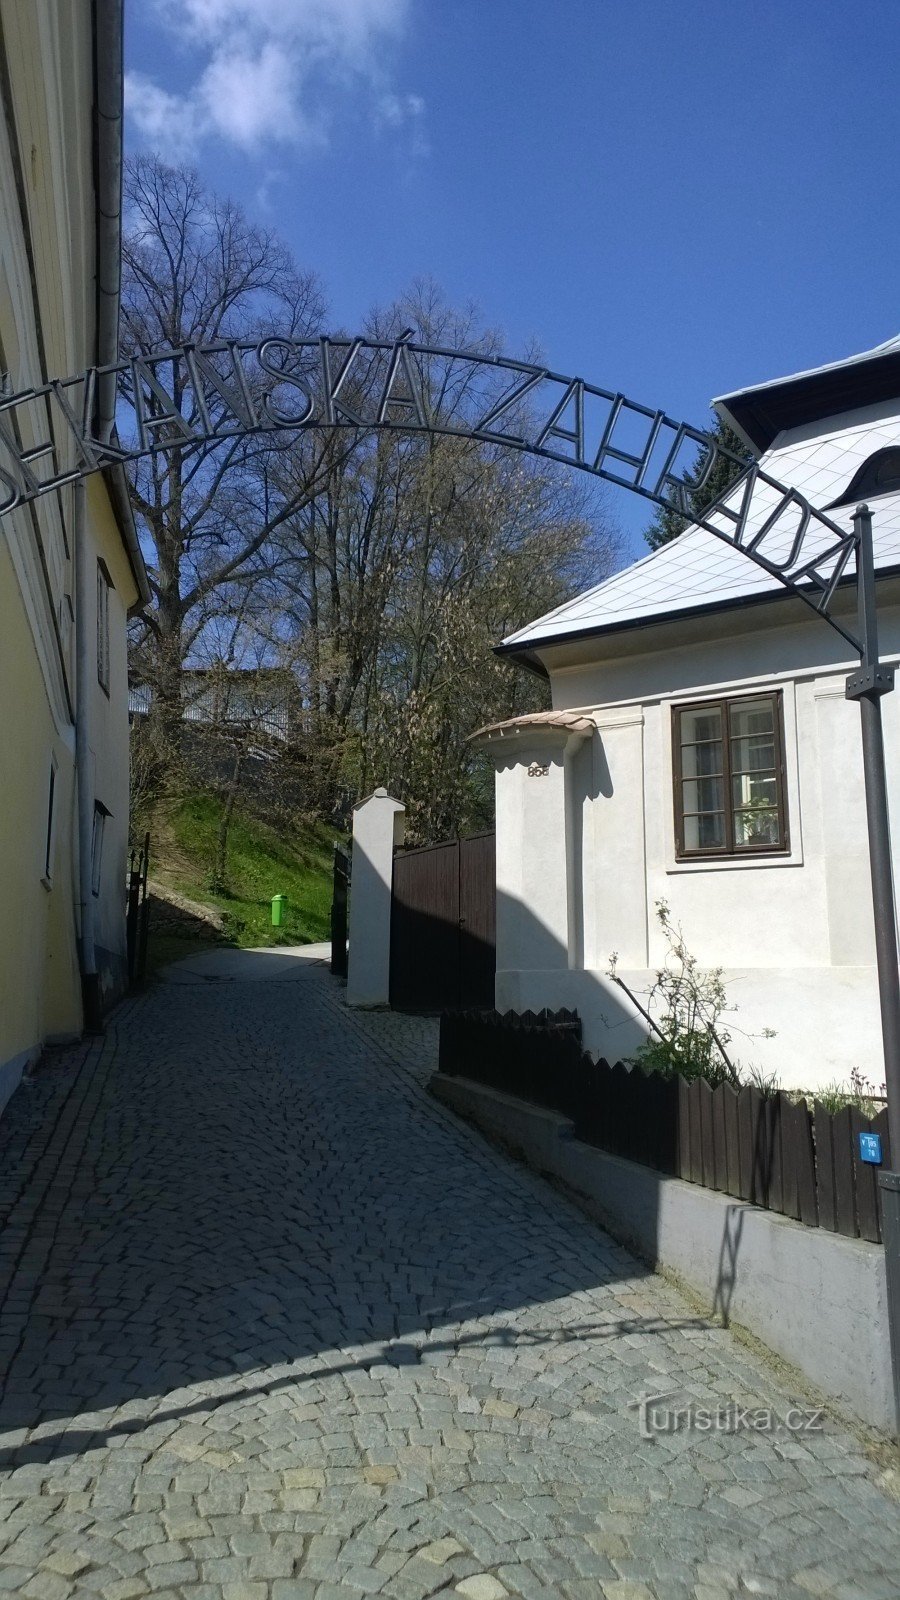 El jardín del decano en Pelhřimov.